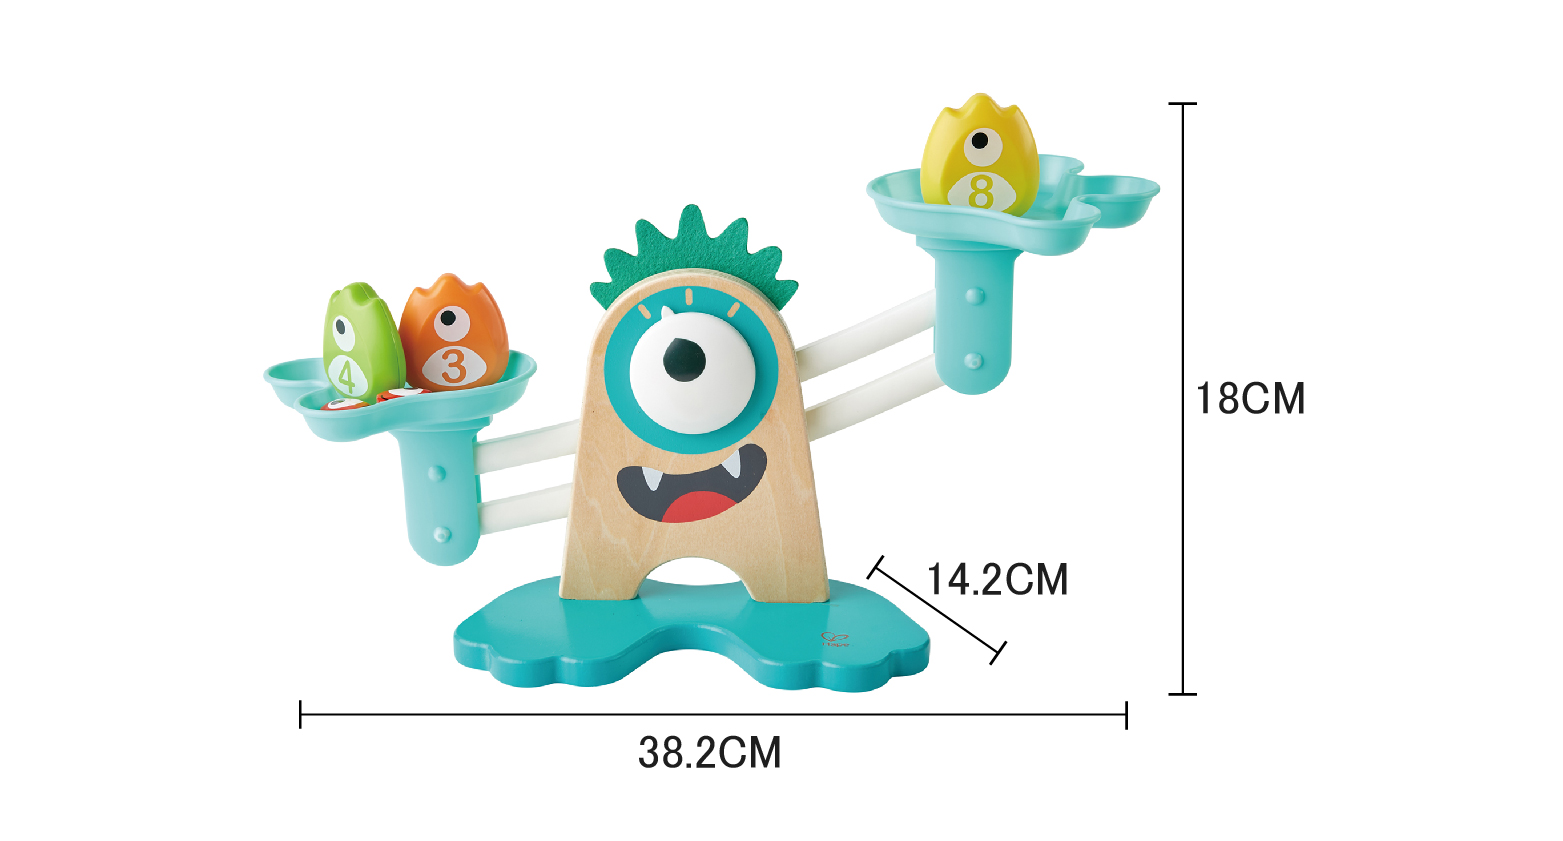 Skala Matematika Hape Monster | 22-Piece Kayu Menghitung, Menyeimbangkan, Mengukur Berat Mainan Playset Untuk Anak-Anak Prasekolah